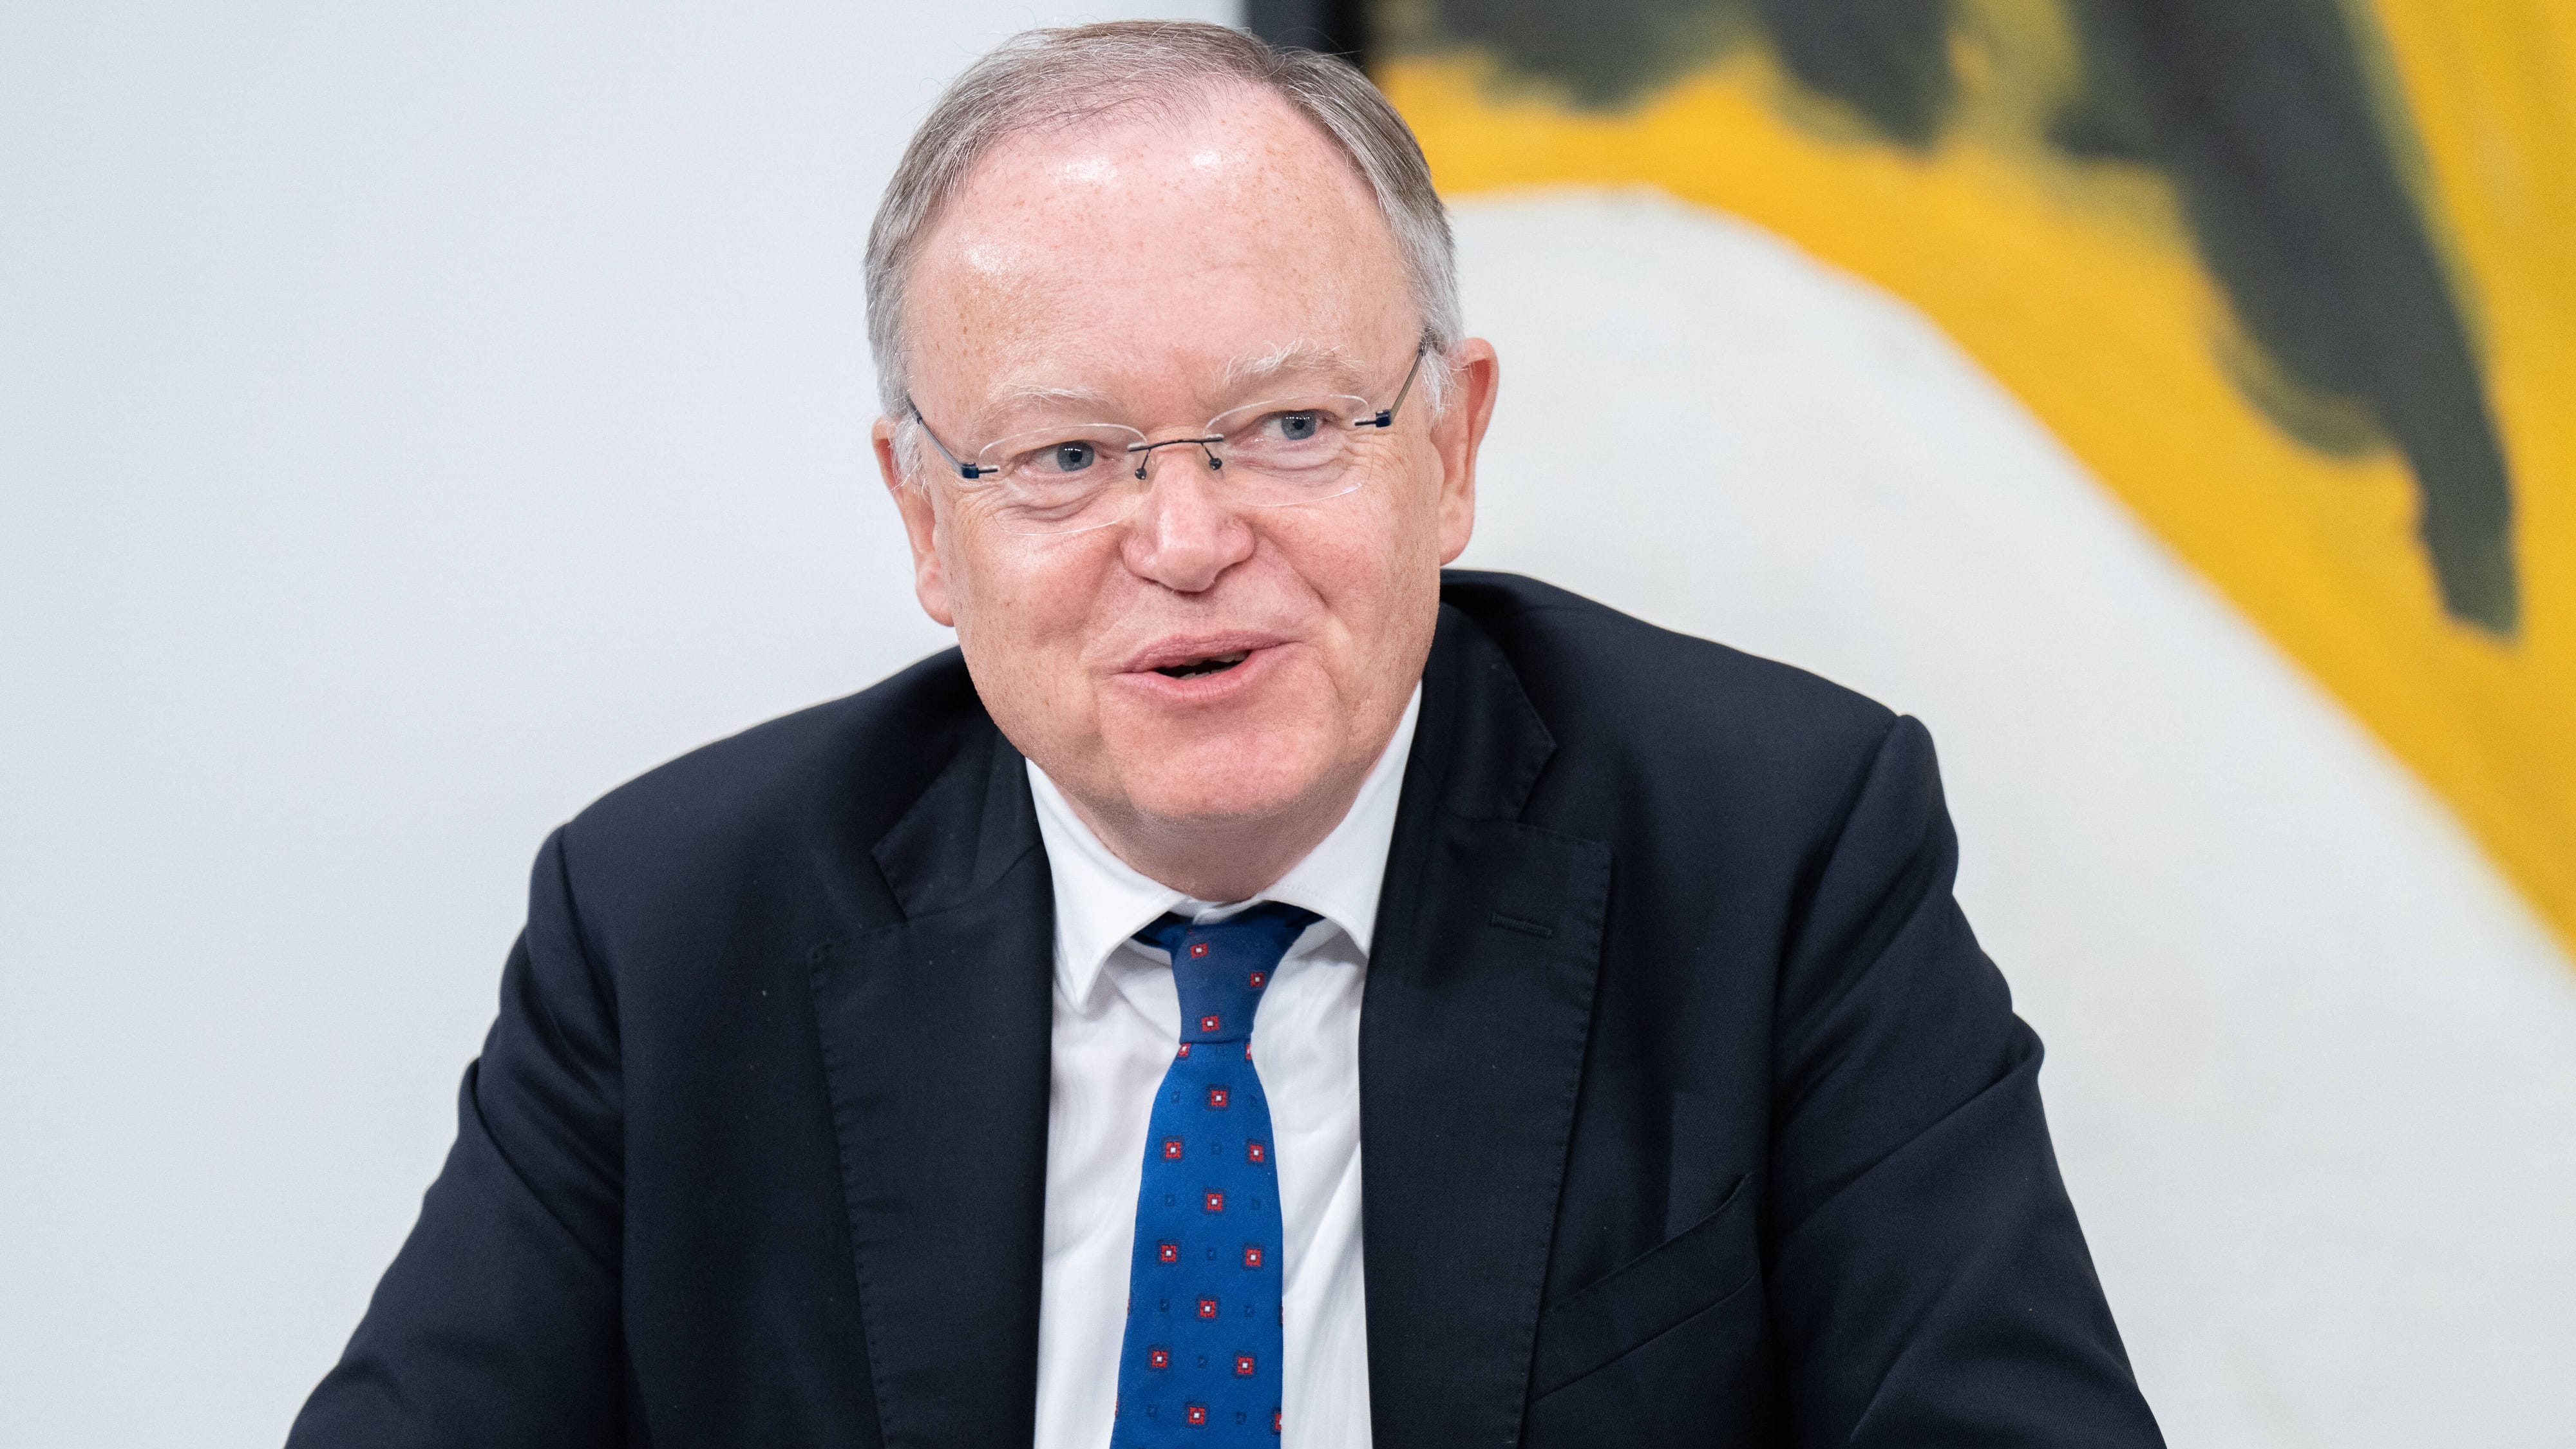 Niedersachsen: Stephan Weil als Ministerpräsident wiedergewählt – dritte Amtszeit